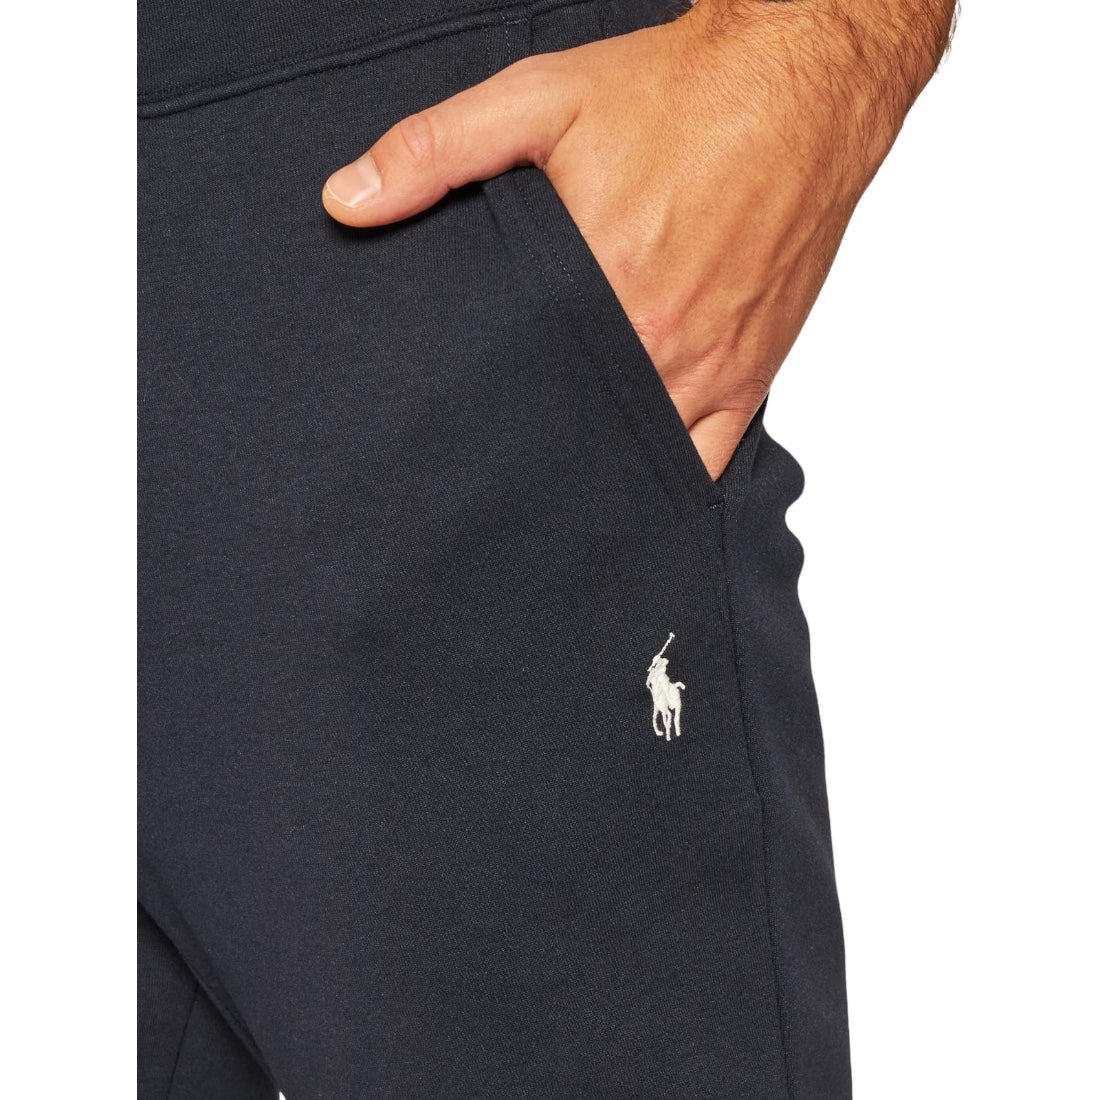 Pantalon Polo Ralph Lauren Core Replen